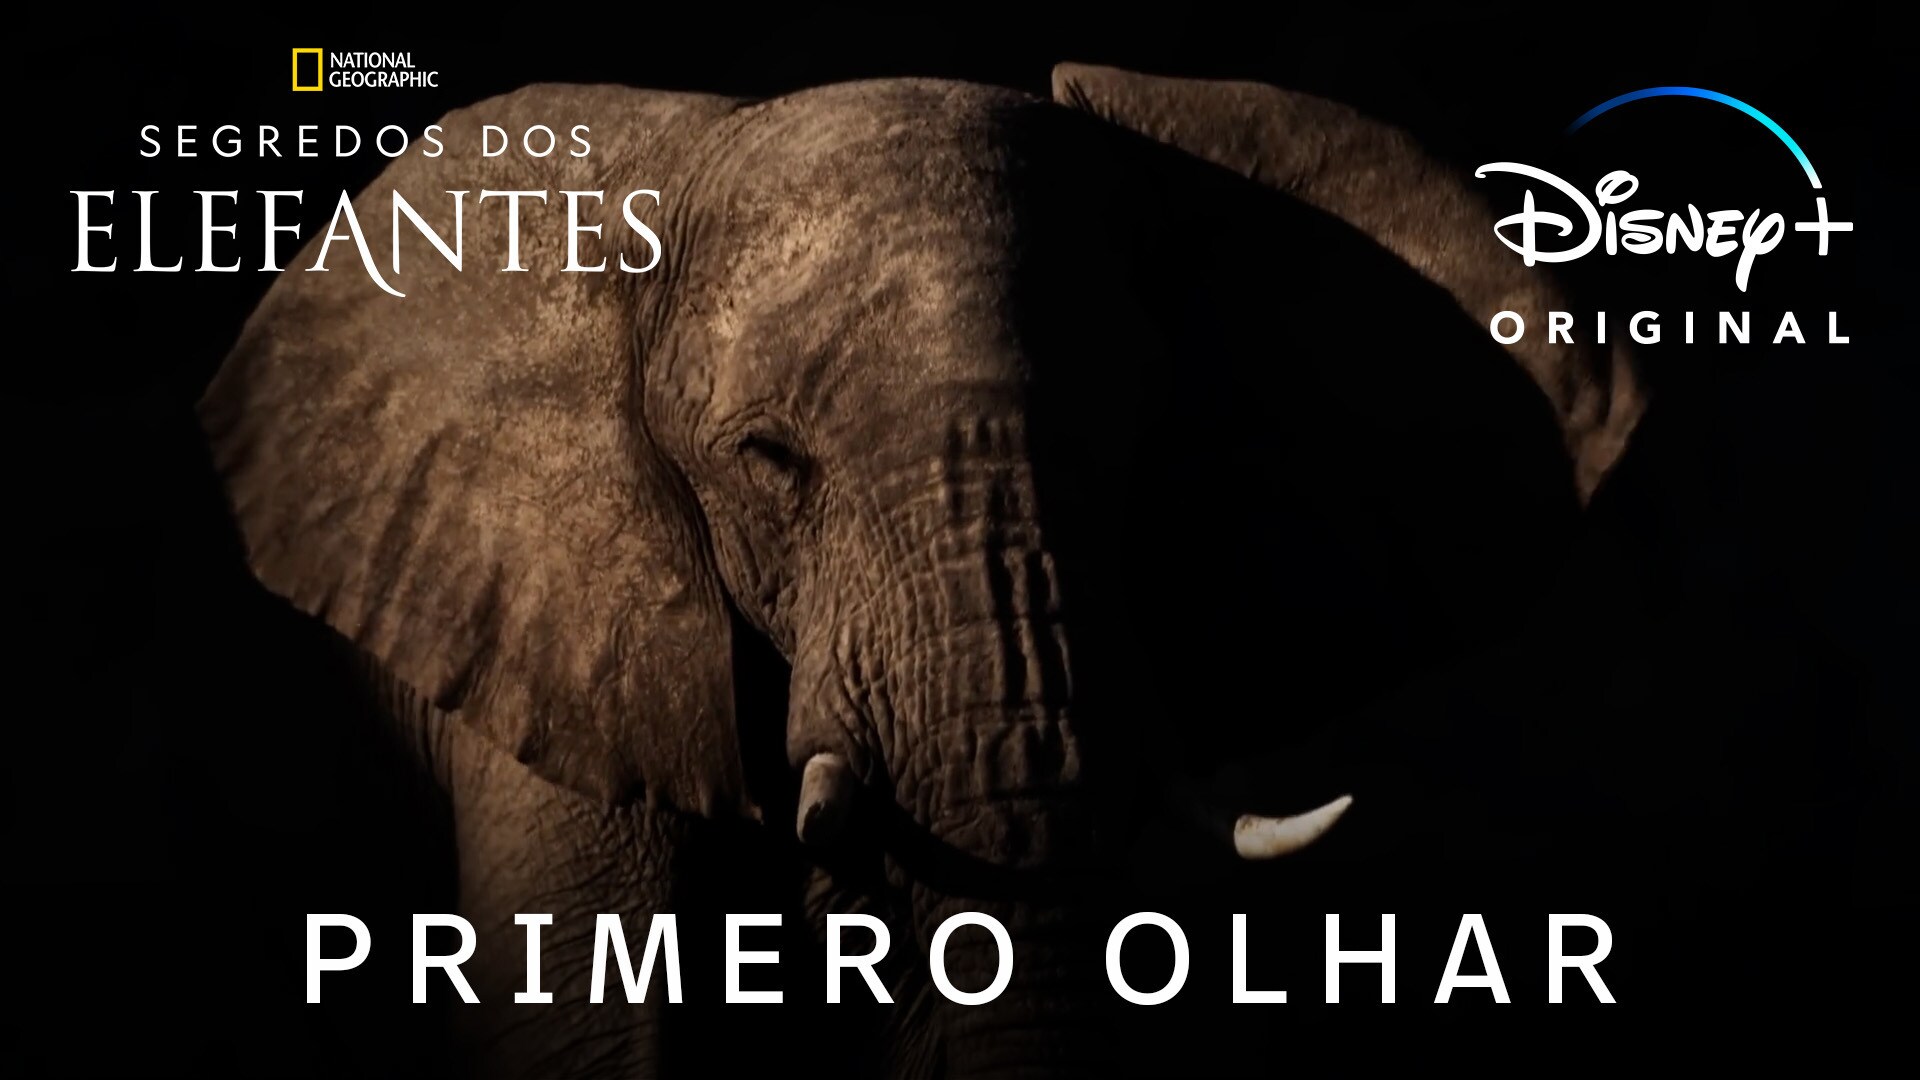 'Segredos dos Elefantes' | Primeiro olhar, narrada por Natalie Portman | Disney+